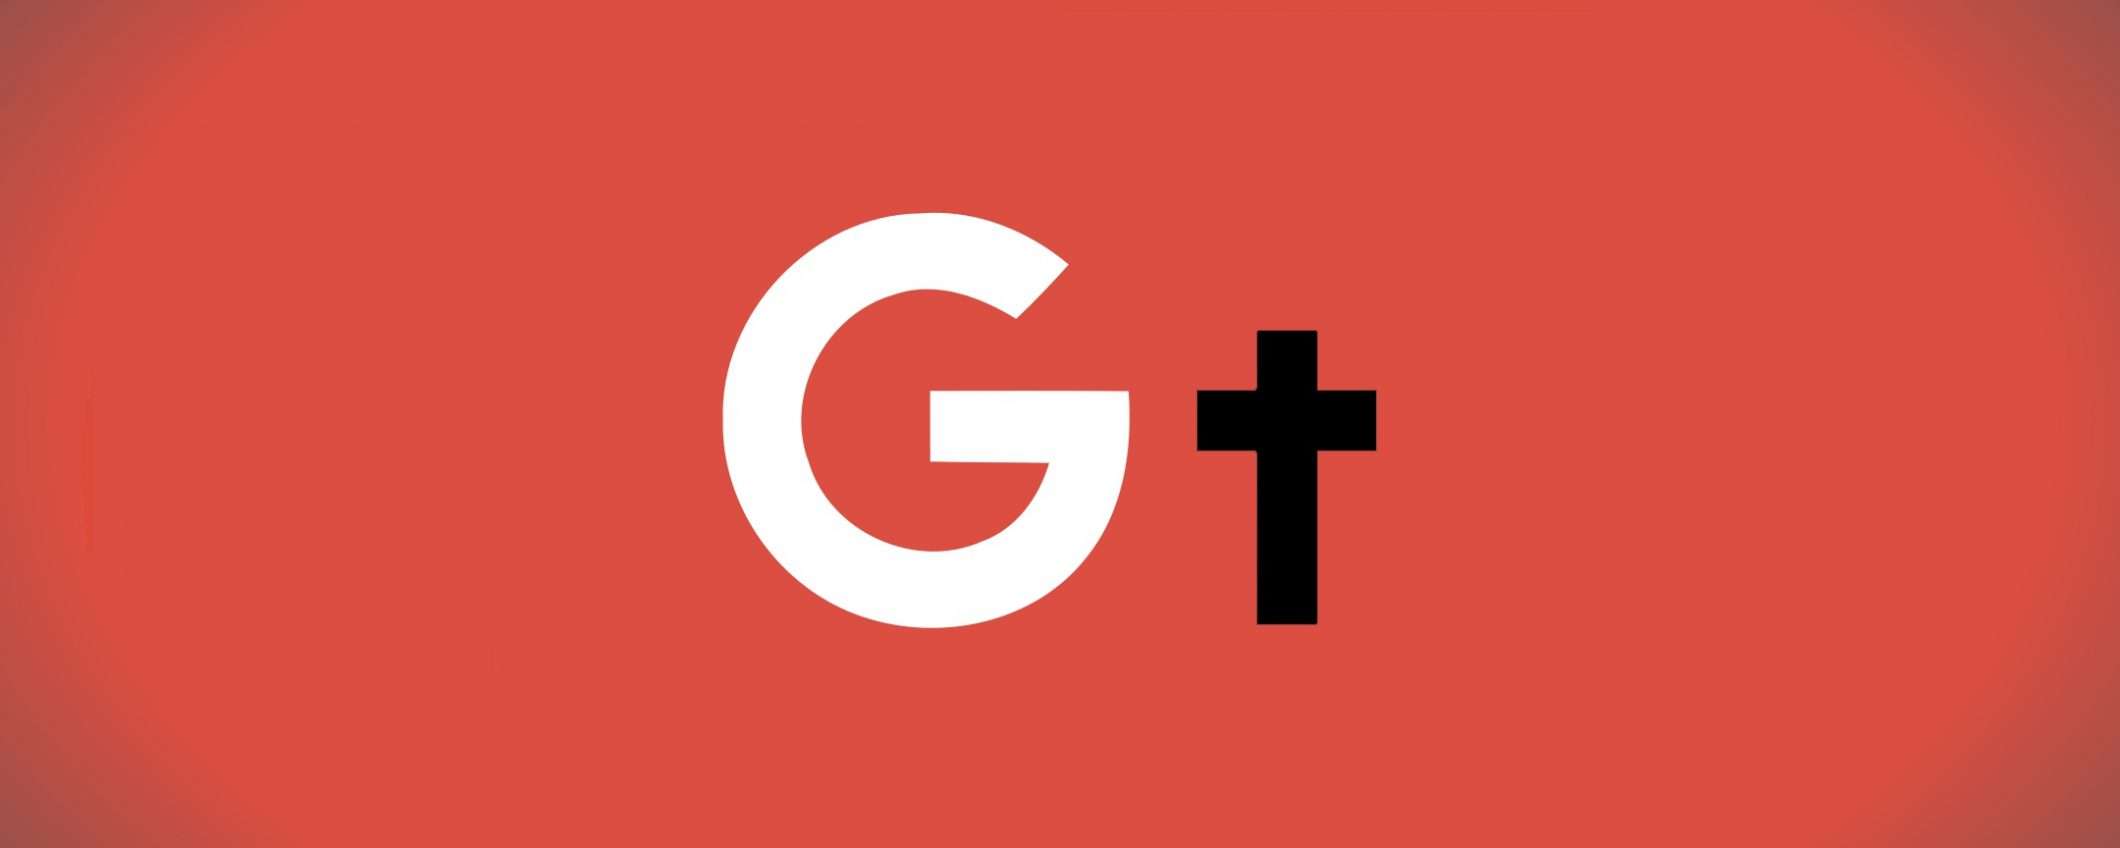 Il funerale di Google+ è cominciato: RIP